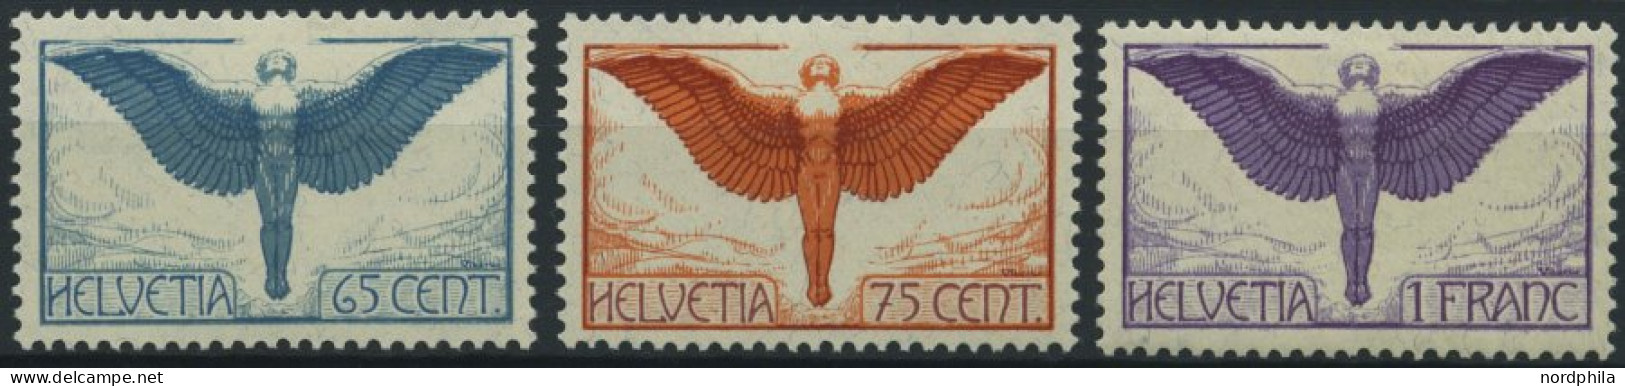 SCHWEIZ BUNDESPOST 189-91x *, 1924, Flugpostmarken, Gewöhnliches Papier, Falzrest, Prachtsatz - Neufs